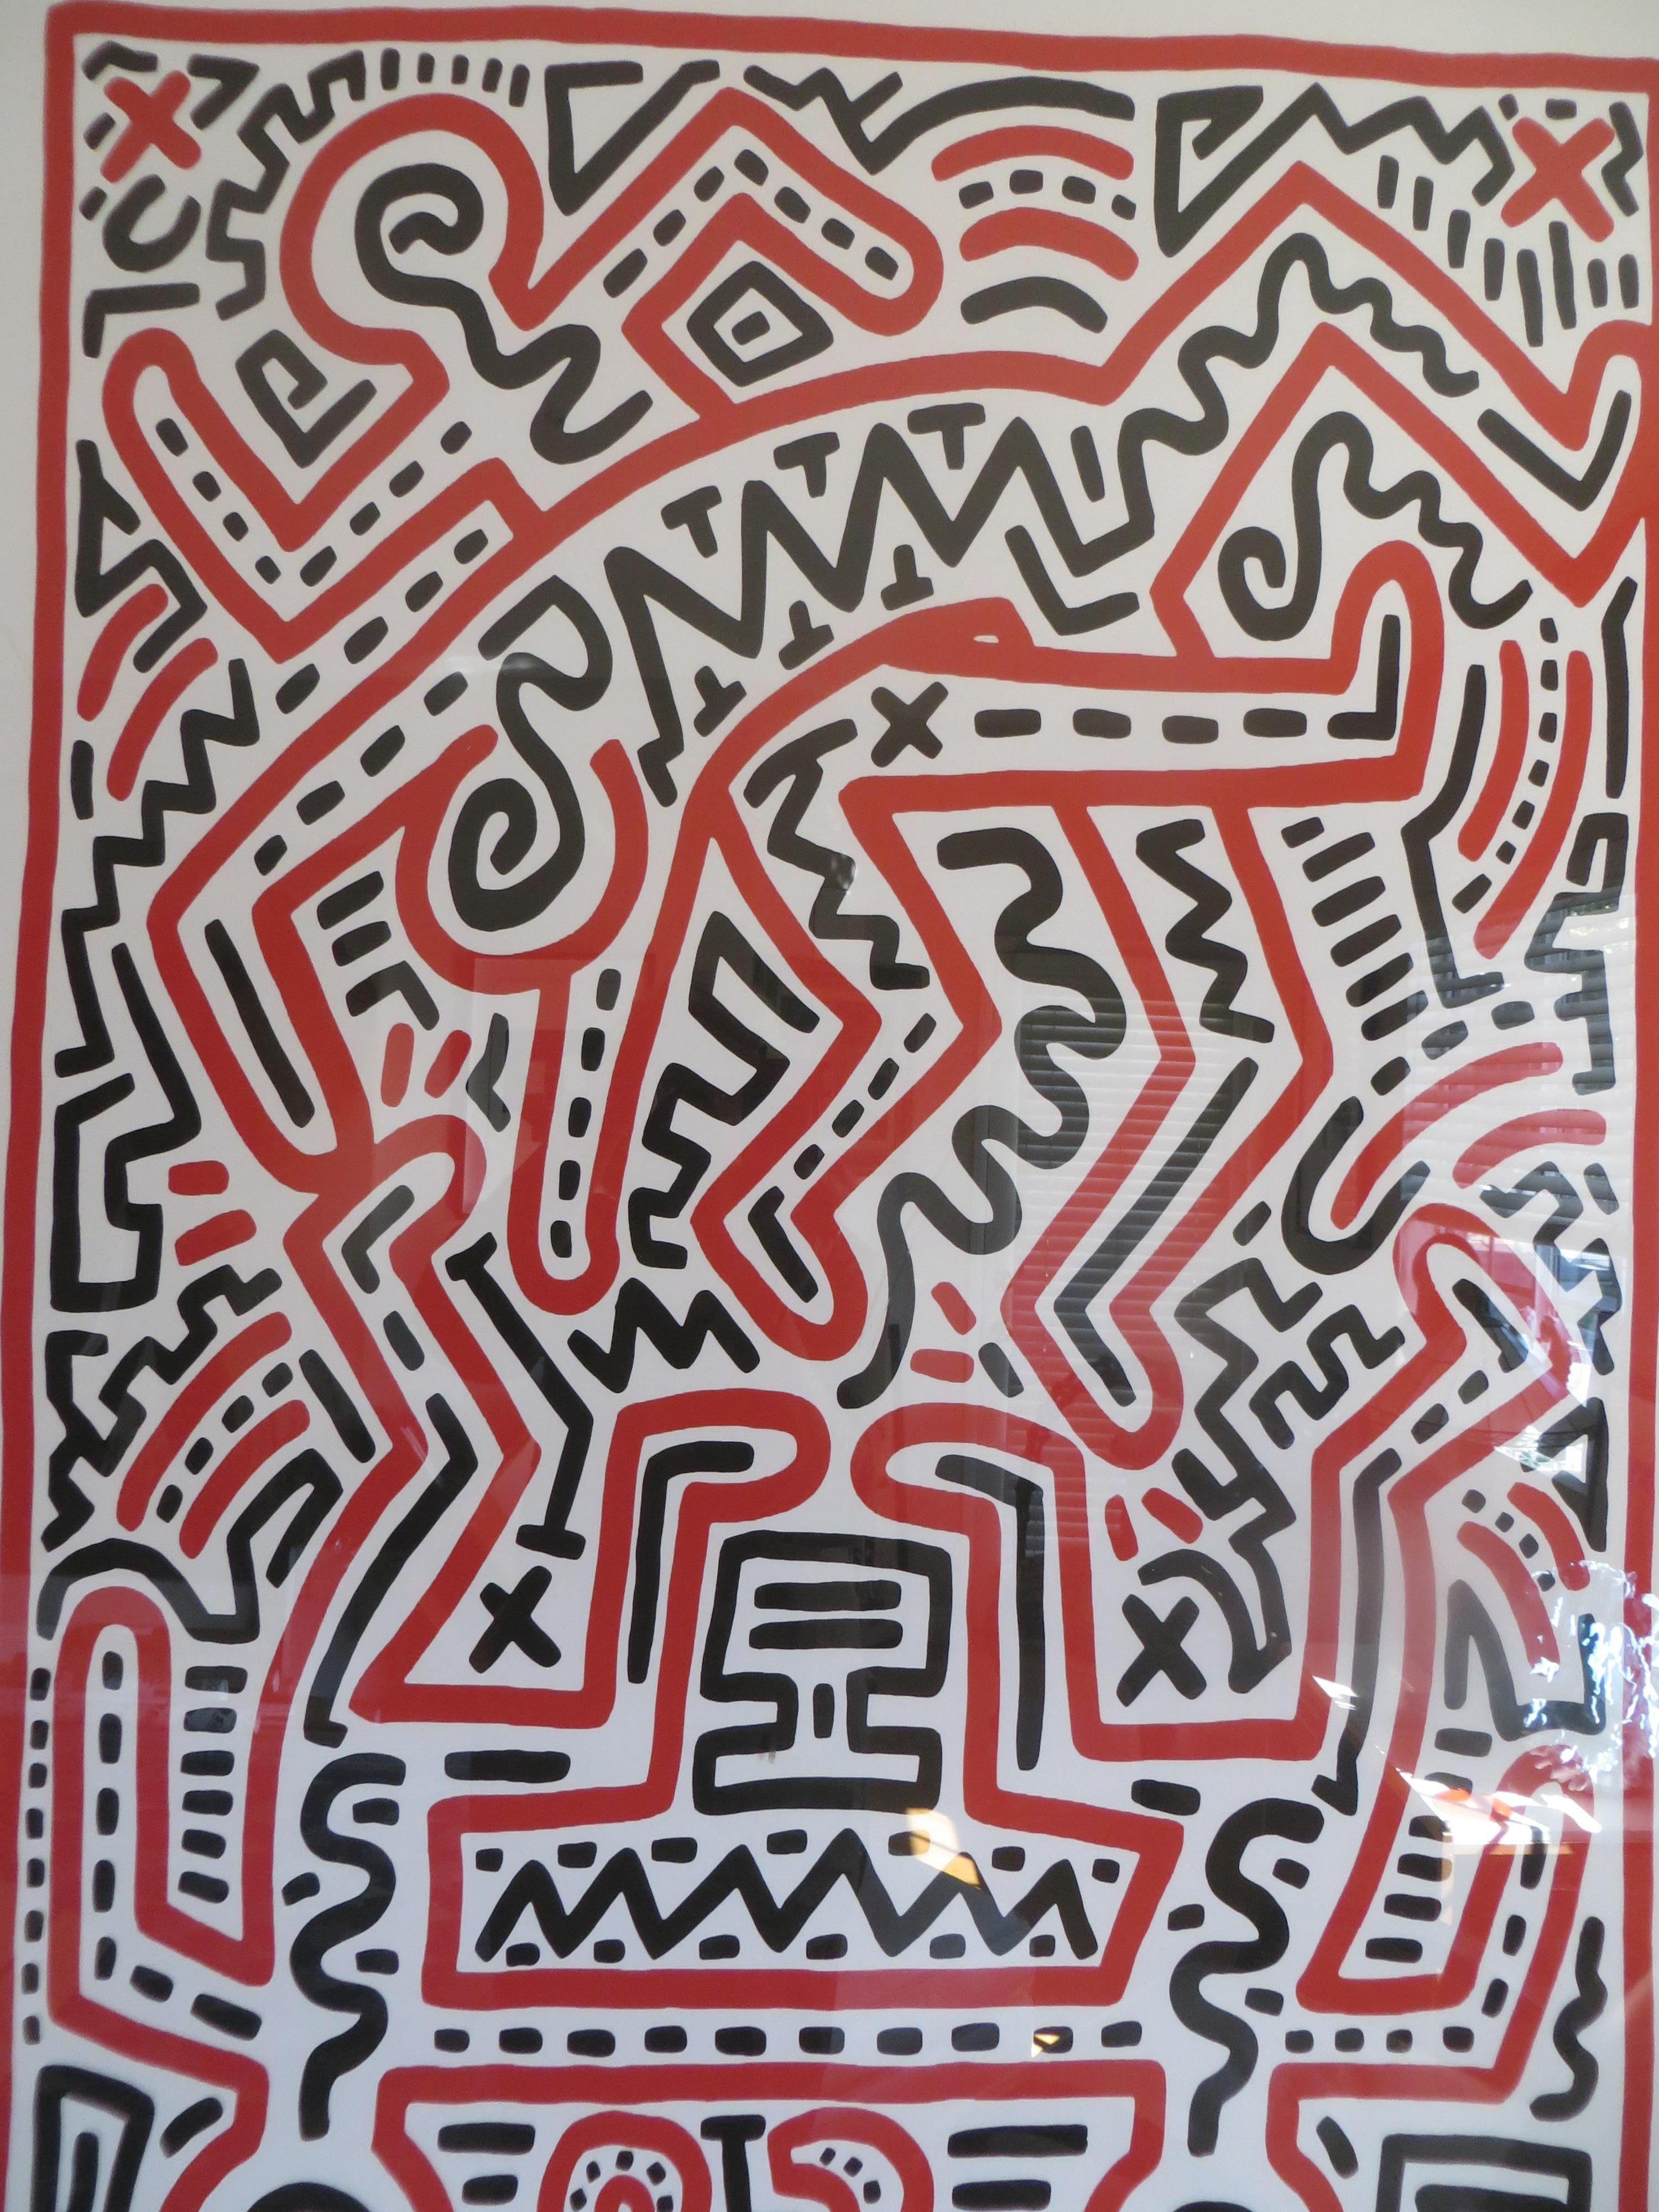 Scénario de l'œuvre d'art  imprimé par Keiith Haring.
Exposition de la Fun Gallery 1983  
En 1983, Keith Haring a réalisé cette image pour son exposition à venir à la Fun Gallery de New York, fondée par les stars du cinéma Patti Astor et Bill